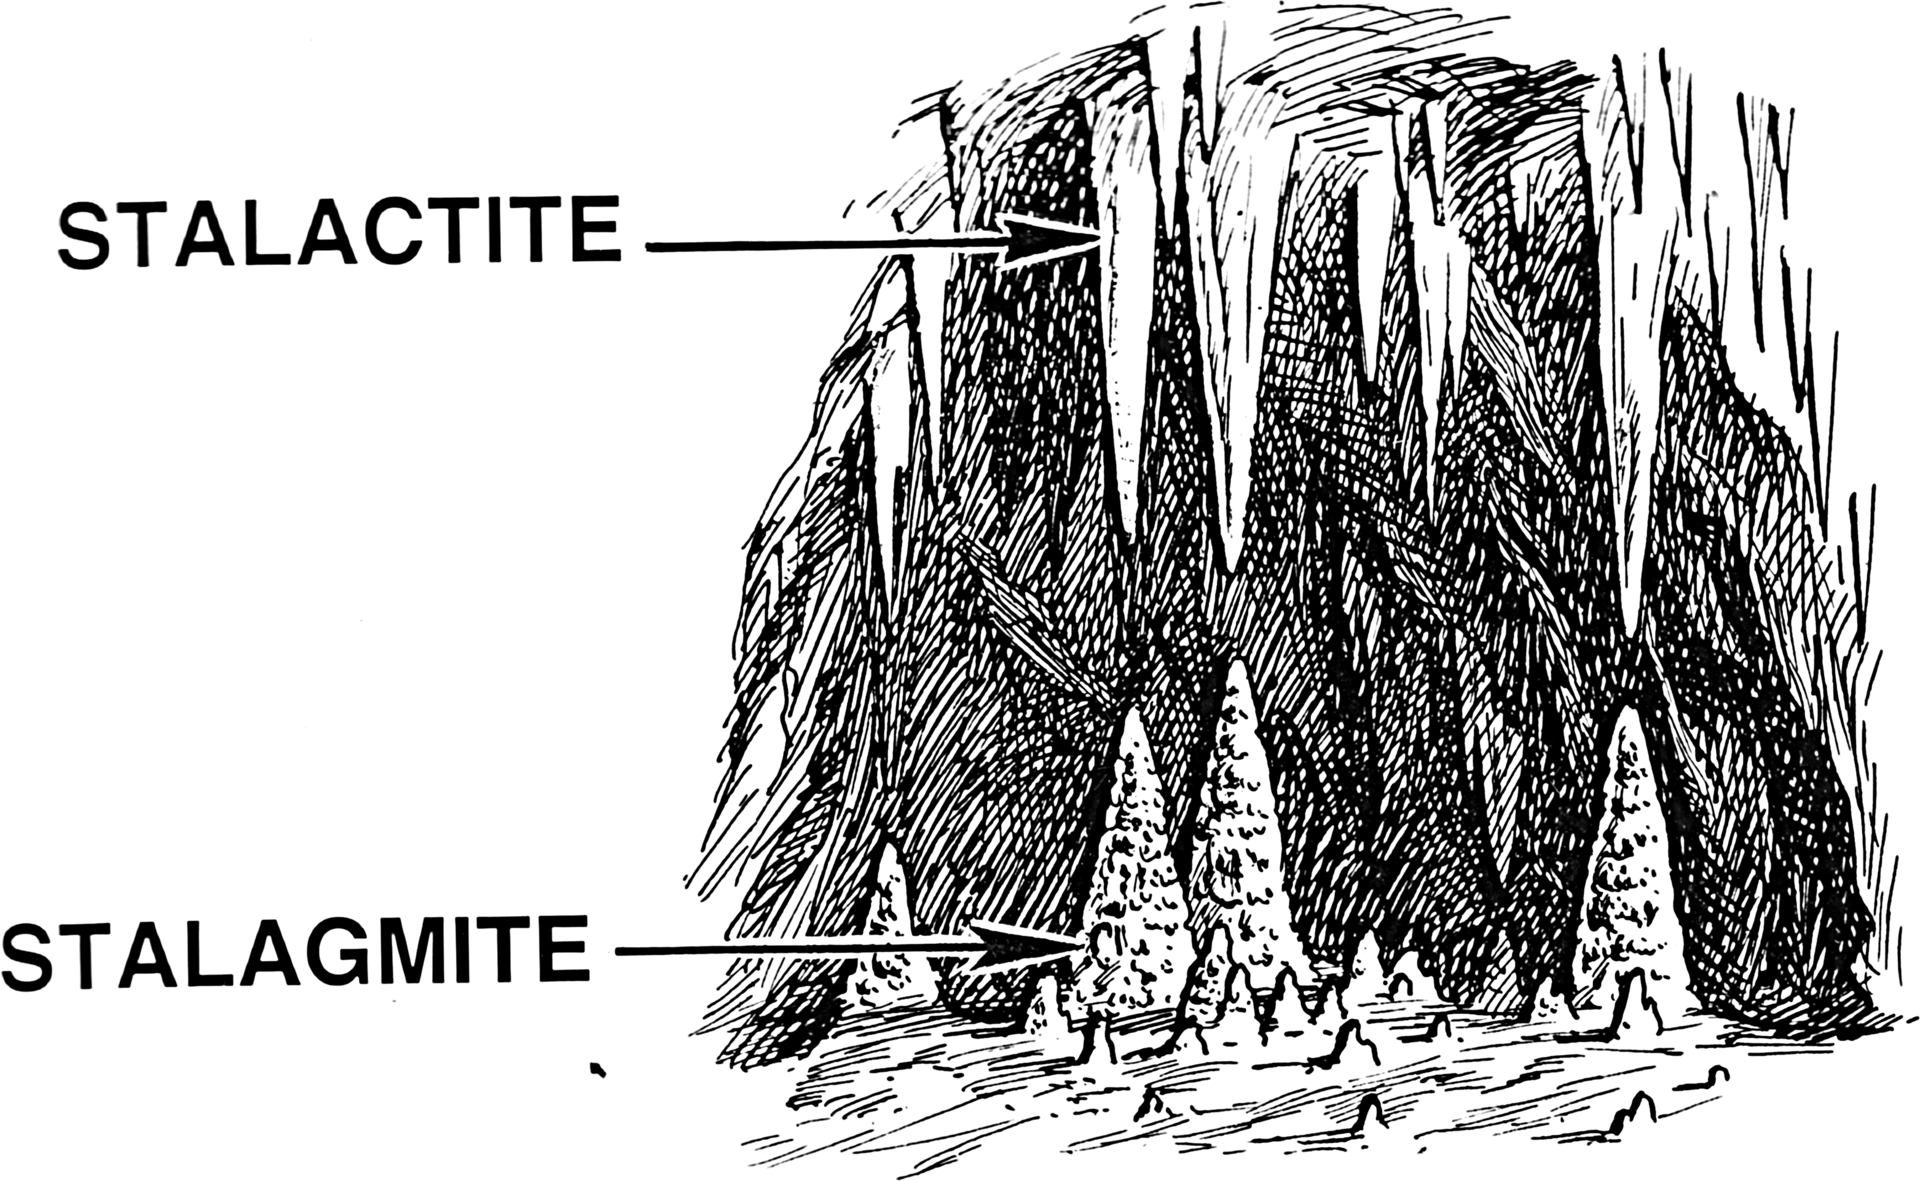 Différence entre les stalactites et les stalagmites